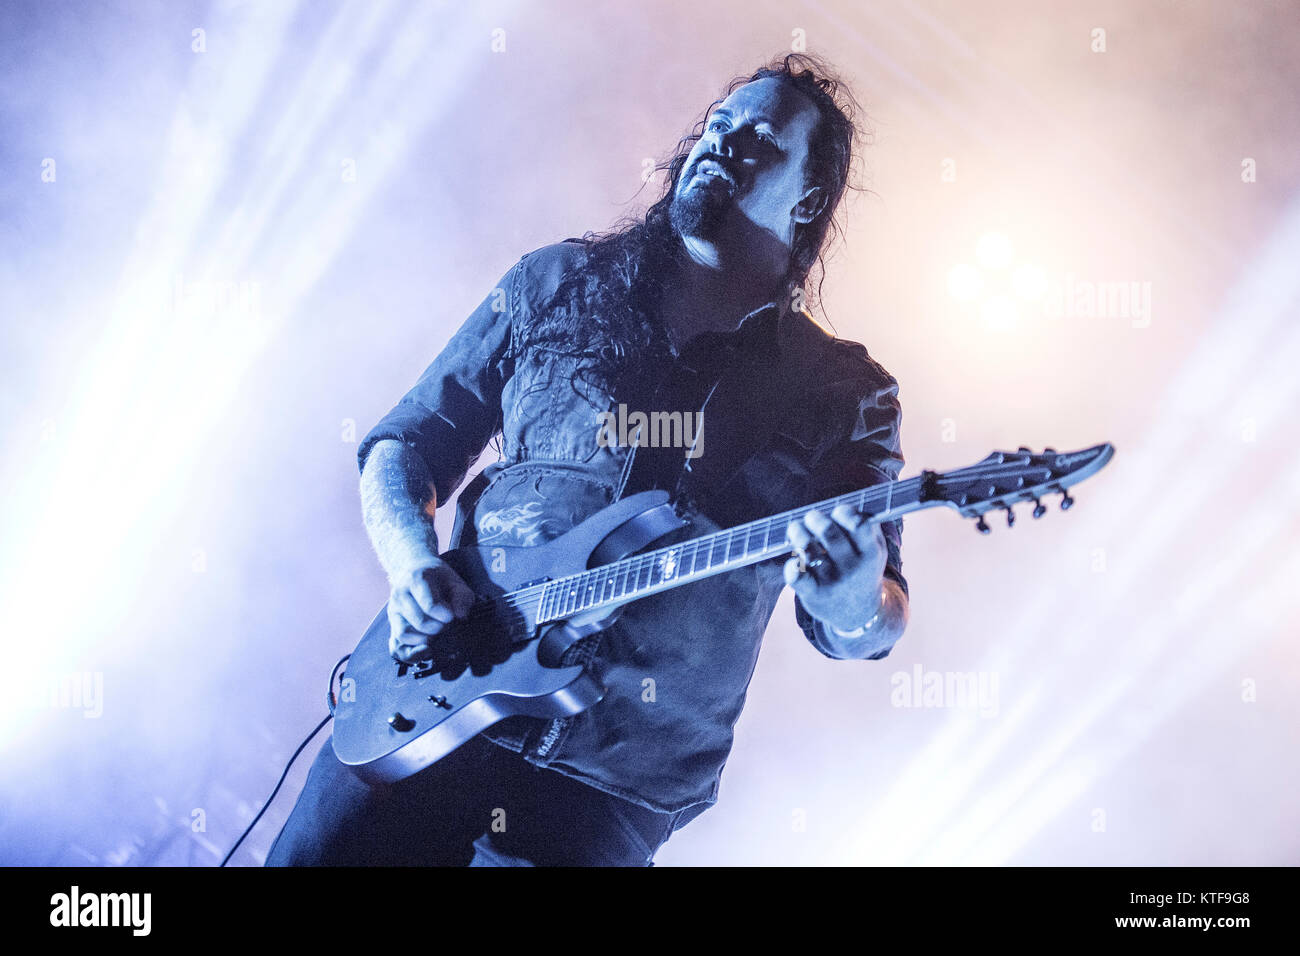 Le groupe de metal progressif suédois Evergrey effectue un concert live au festival de musique suédois Sweden Rock Festival 2015. Ici le chanteur Tom S. Englund est vu sur scène. La Suède, 03/06 2015. Banque D'Images